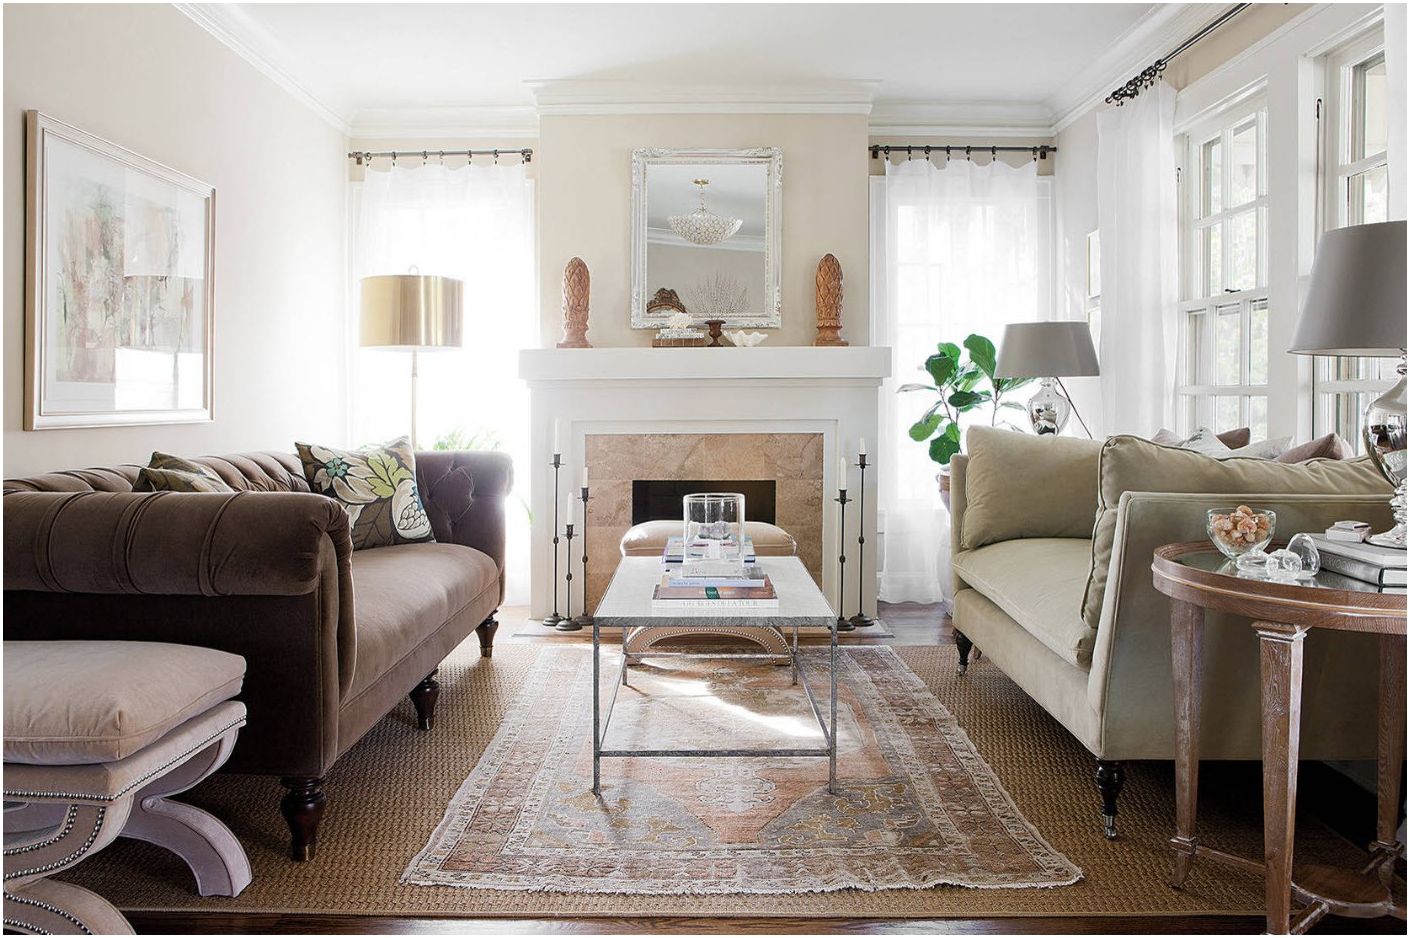 Soggiorno 13 mq m: stili di base e regole di progettazione per un piccolo soggiorno